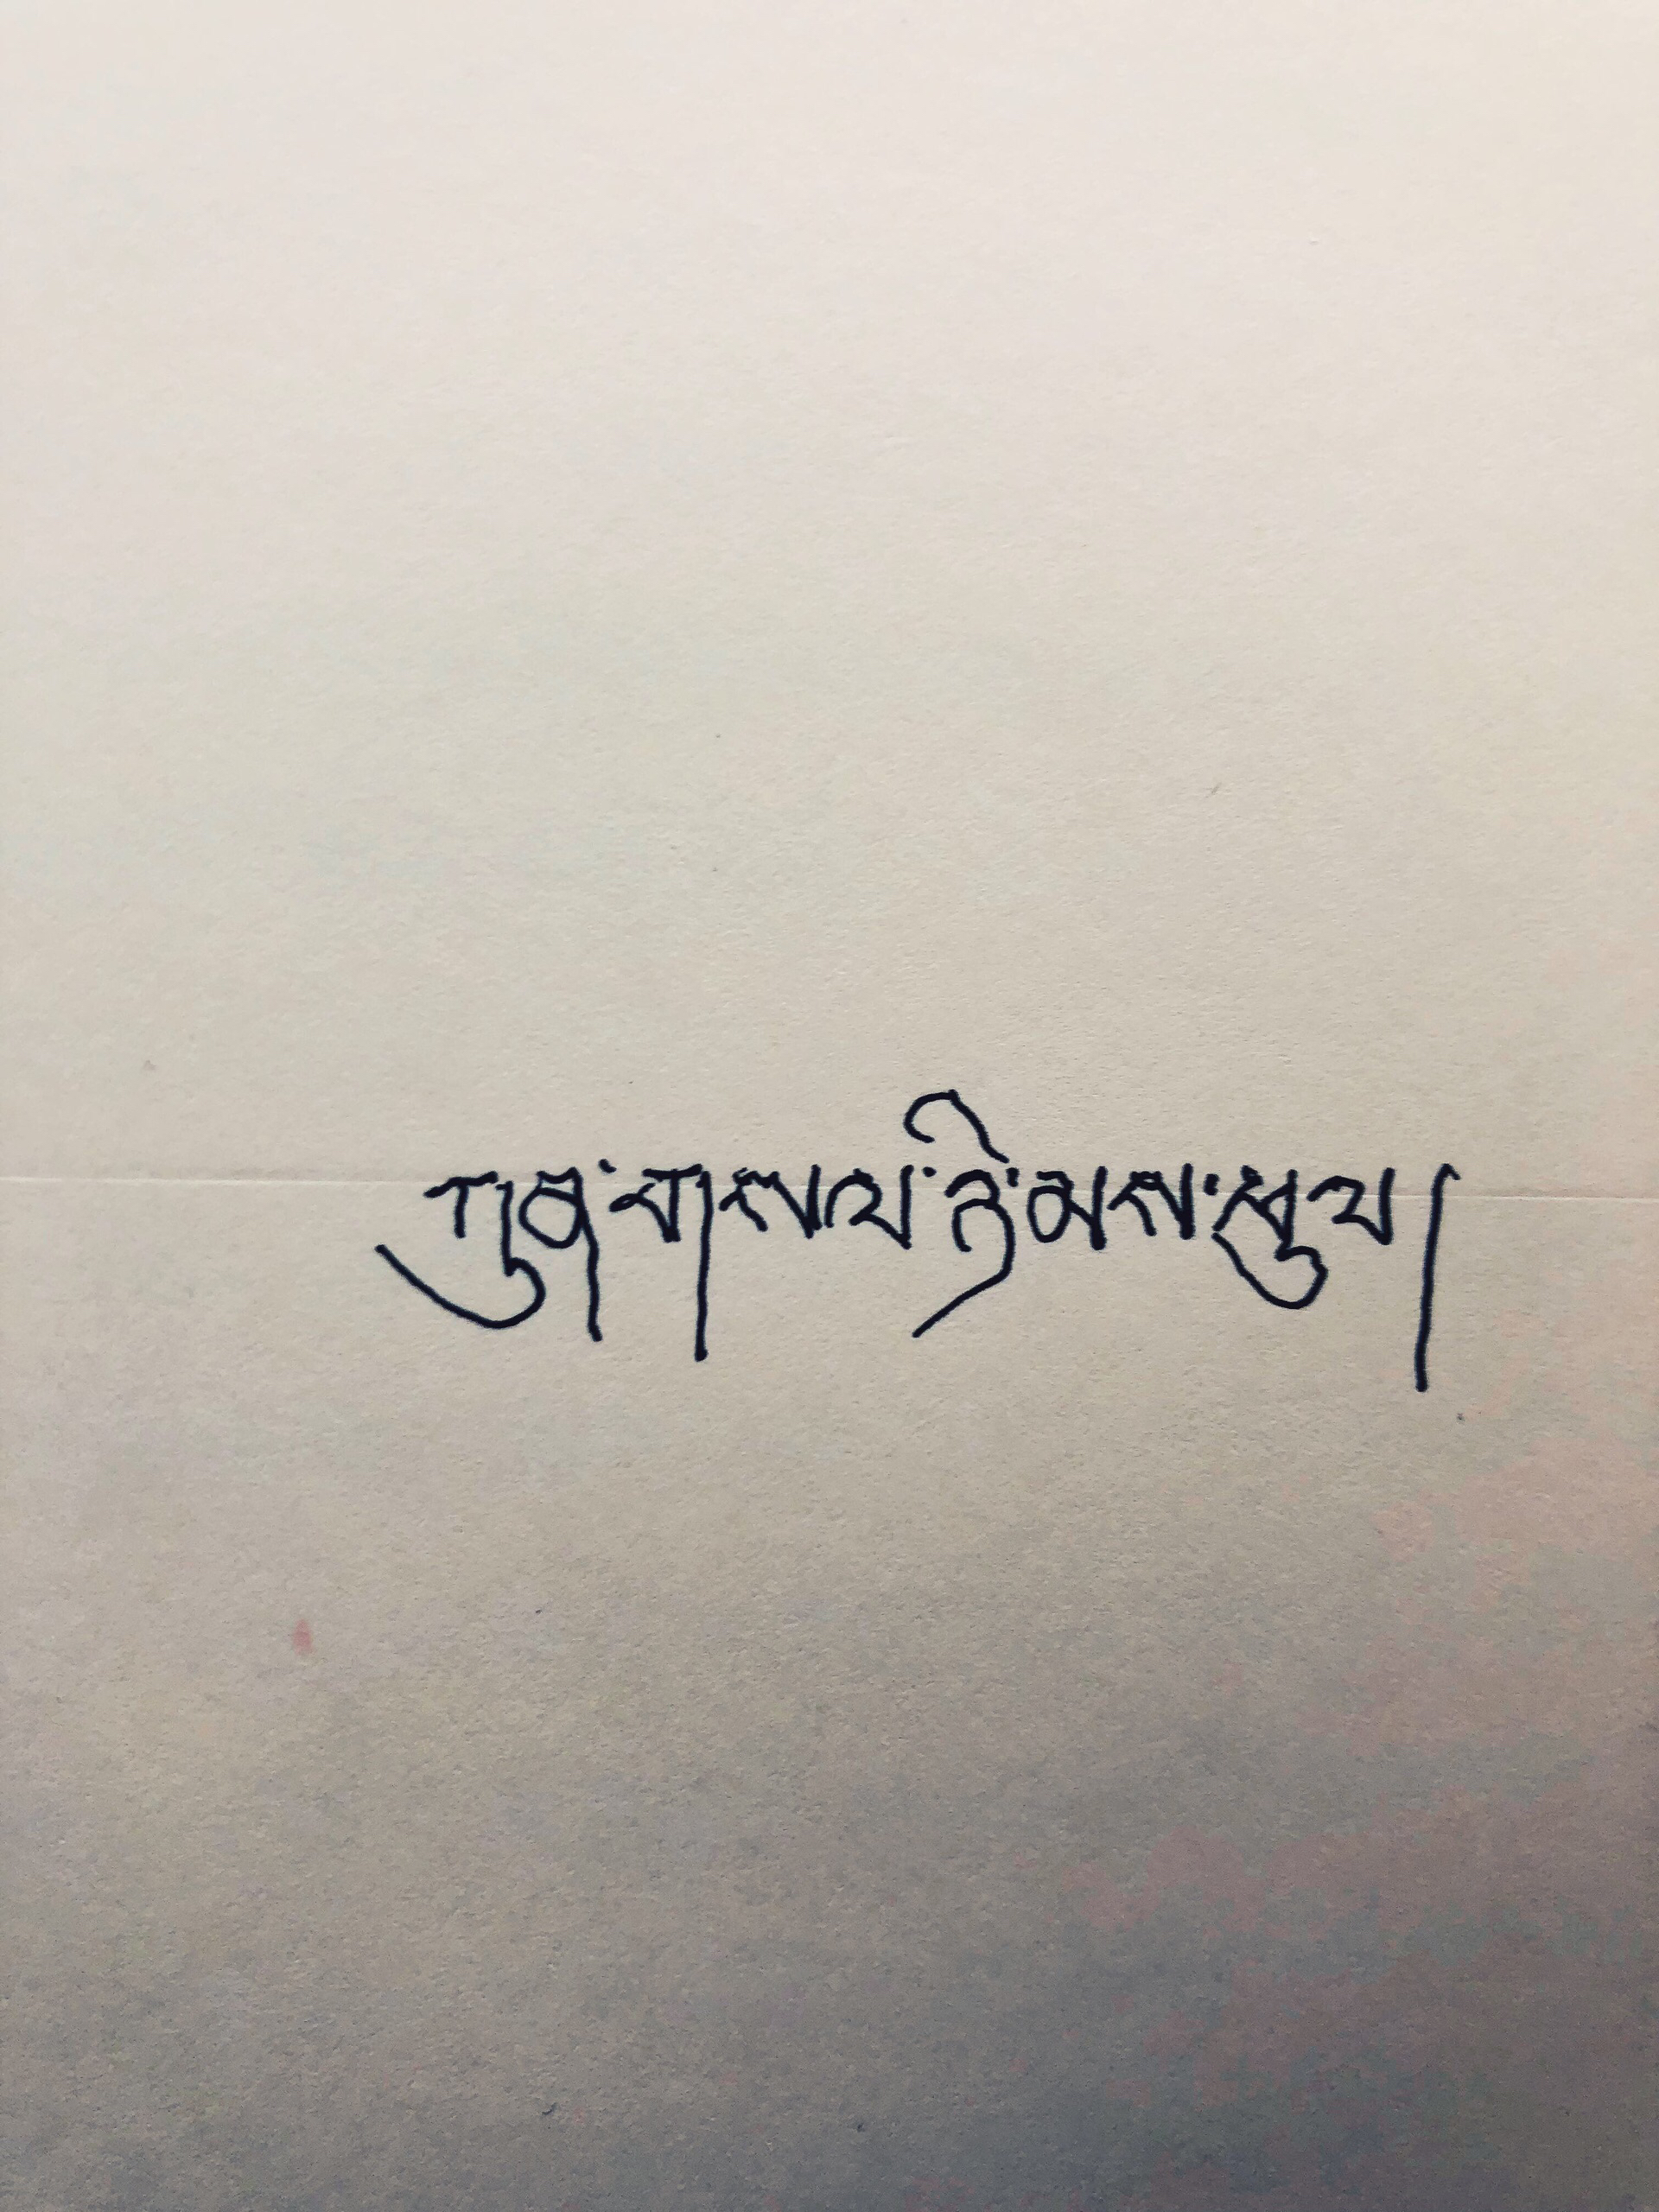 离开色达时候，一名喇嘛给了我一本索达吉堪布的《有什么舍不得》_色达五明佛学院